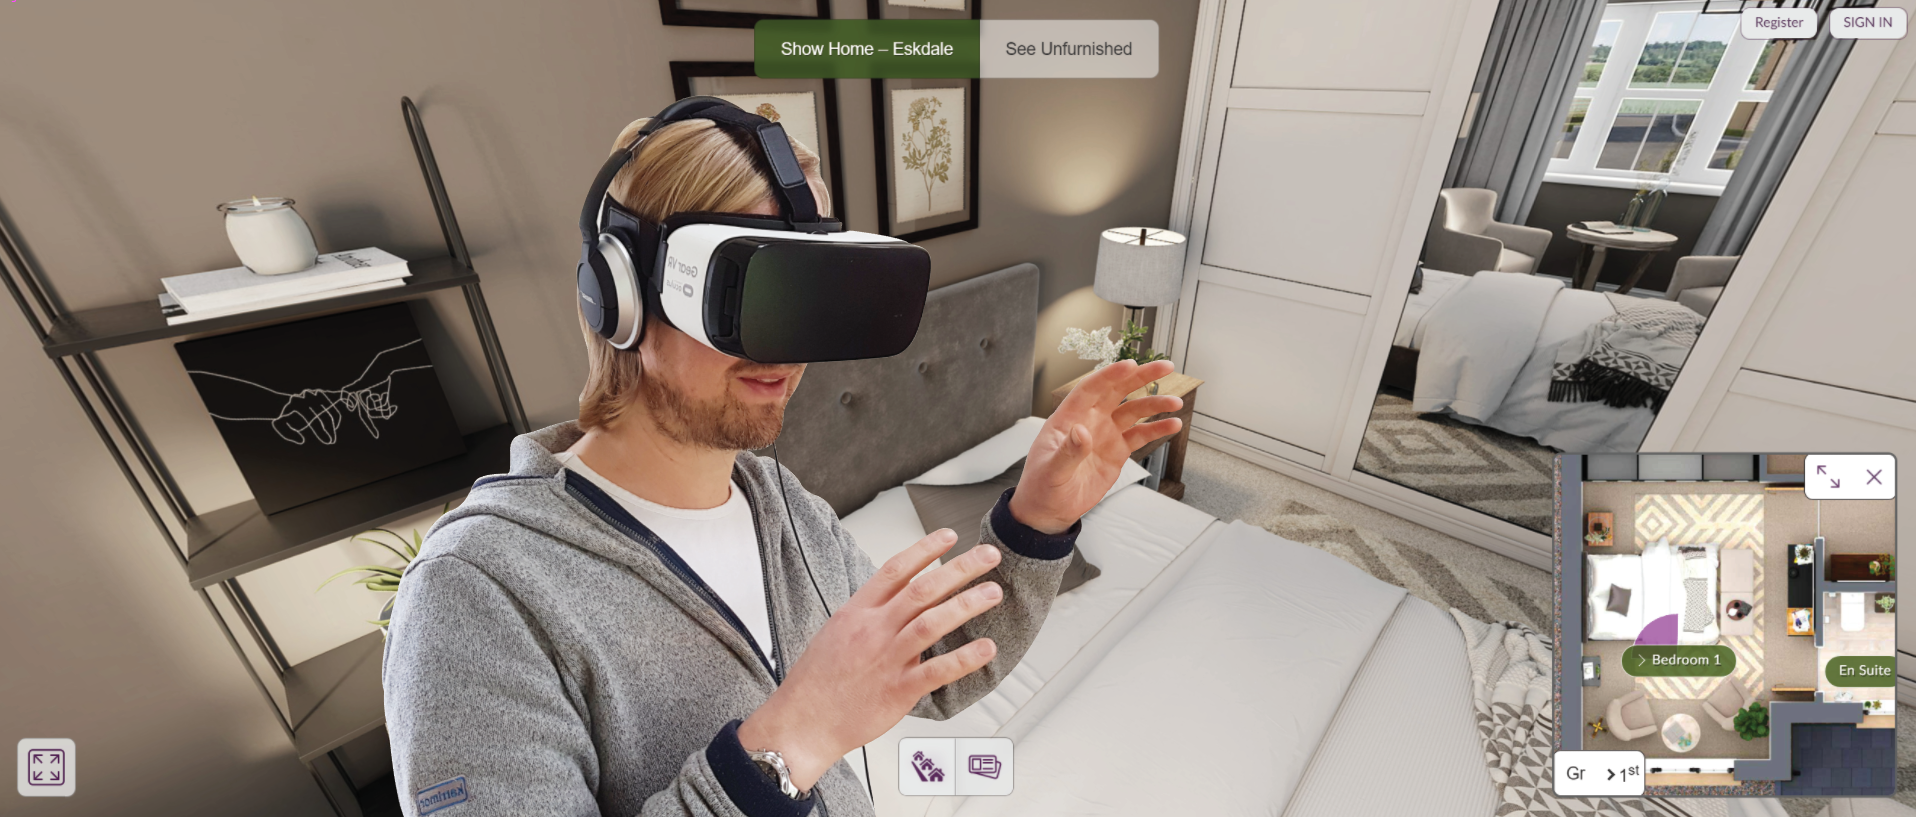 User in VR glasses